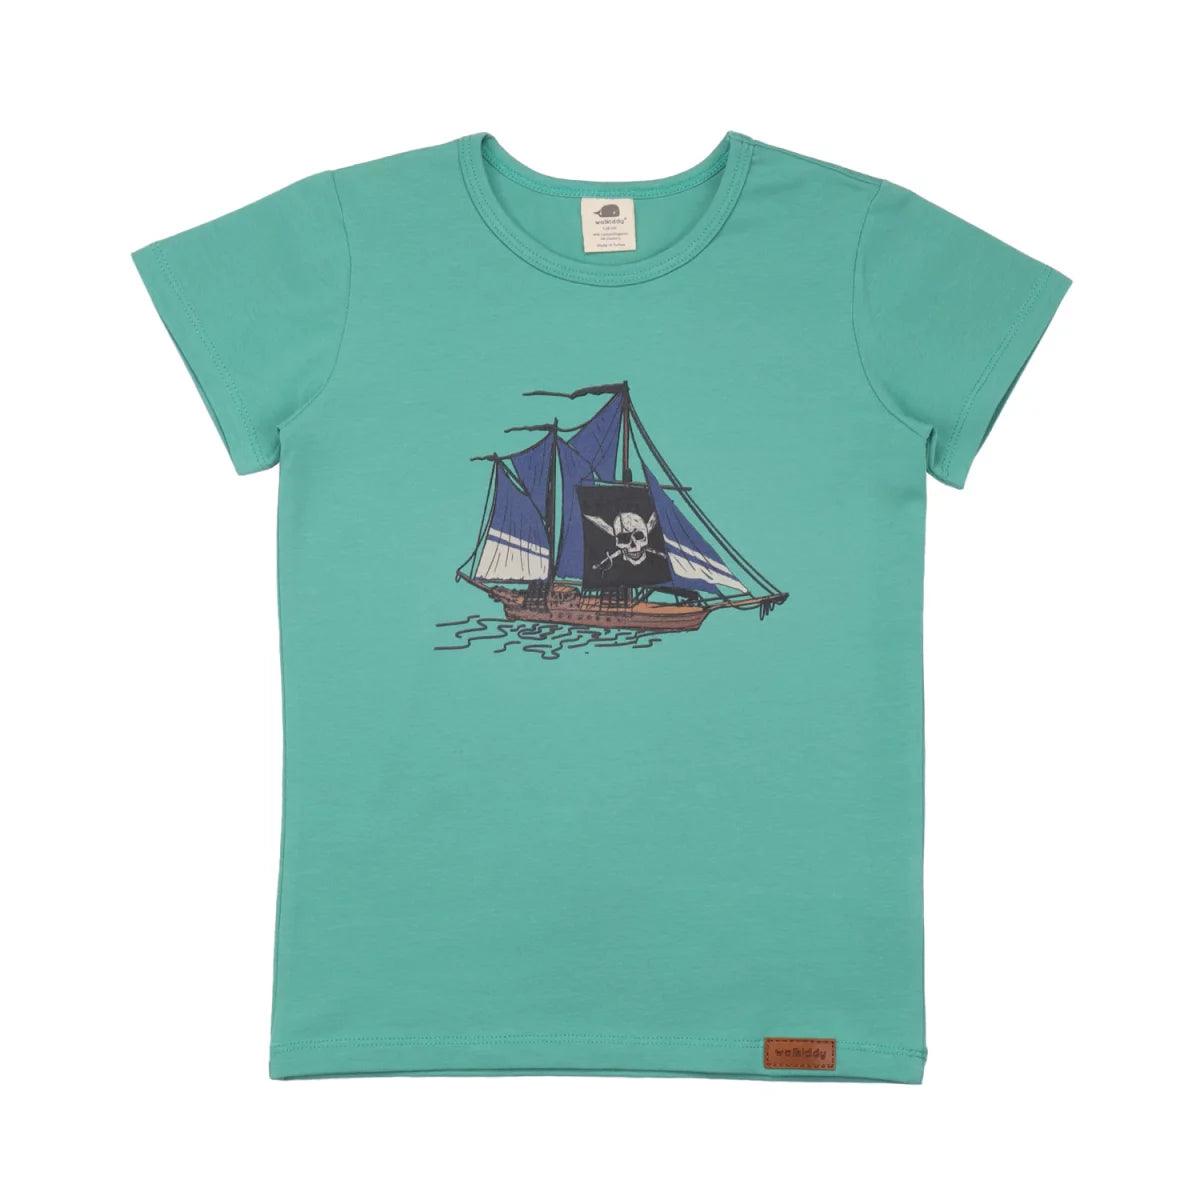 Walkiddy - Pirate Ships - T-Shirt - Makimo - Smart Kids